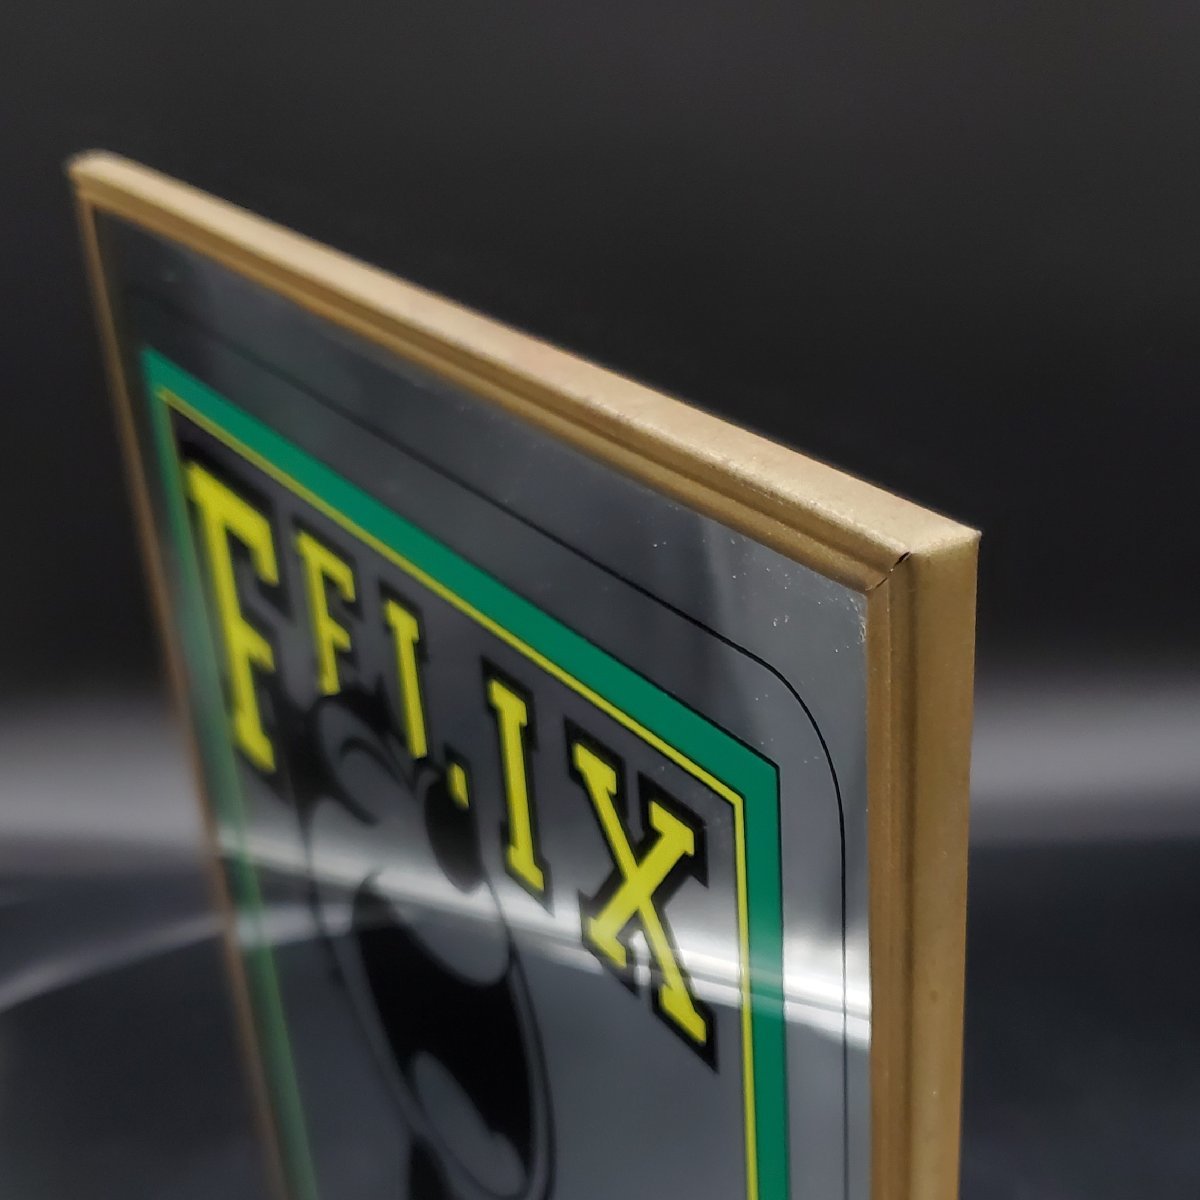 【宝蔵】FELIX THE CAT フィリックスザキャット パブミラー 壁掛け 鏡 約30.5cm×45.6cm 鏡面左下割れあり_画像7